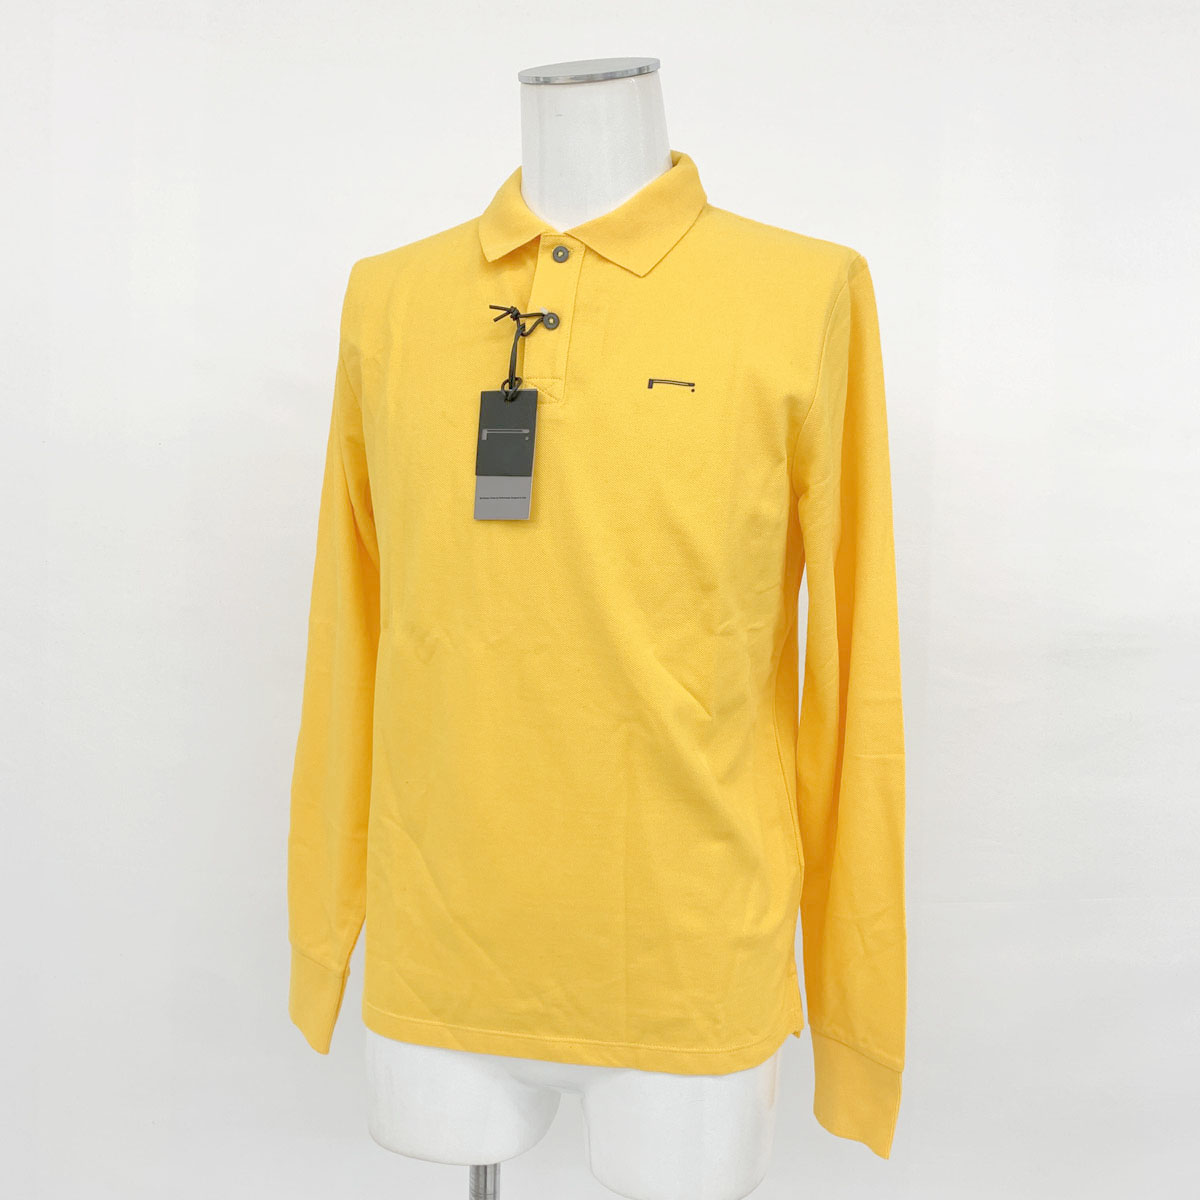 未使用品 PIRELLI ピレリ 開店祝い 長袖ポロシャツ Mサイズ yellow WEB限定カラー 黄 参考価格19 メンズ コットン100% イエロー 中古 トップス 000円